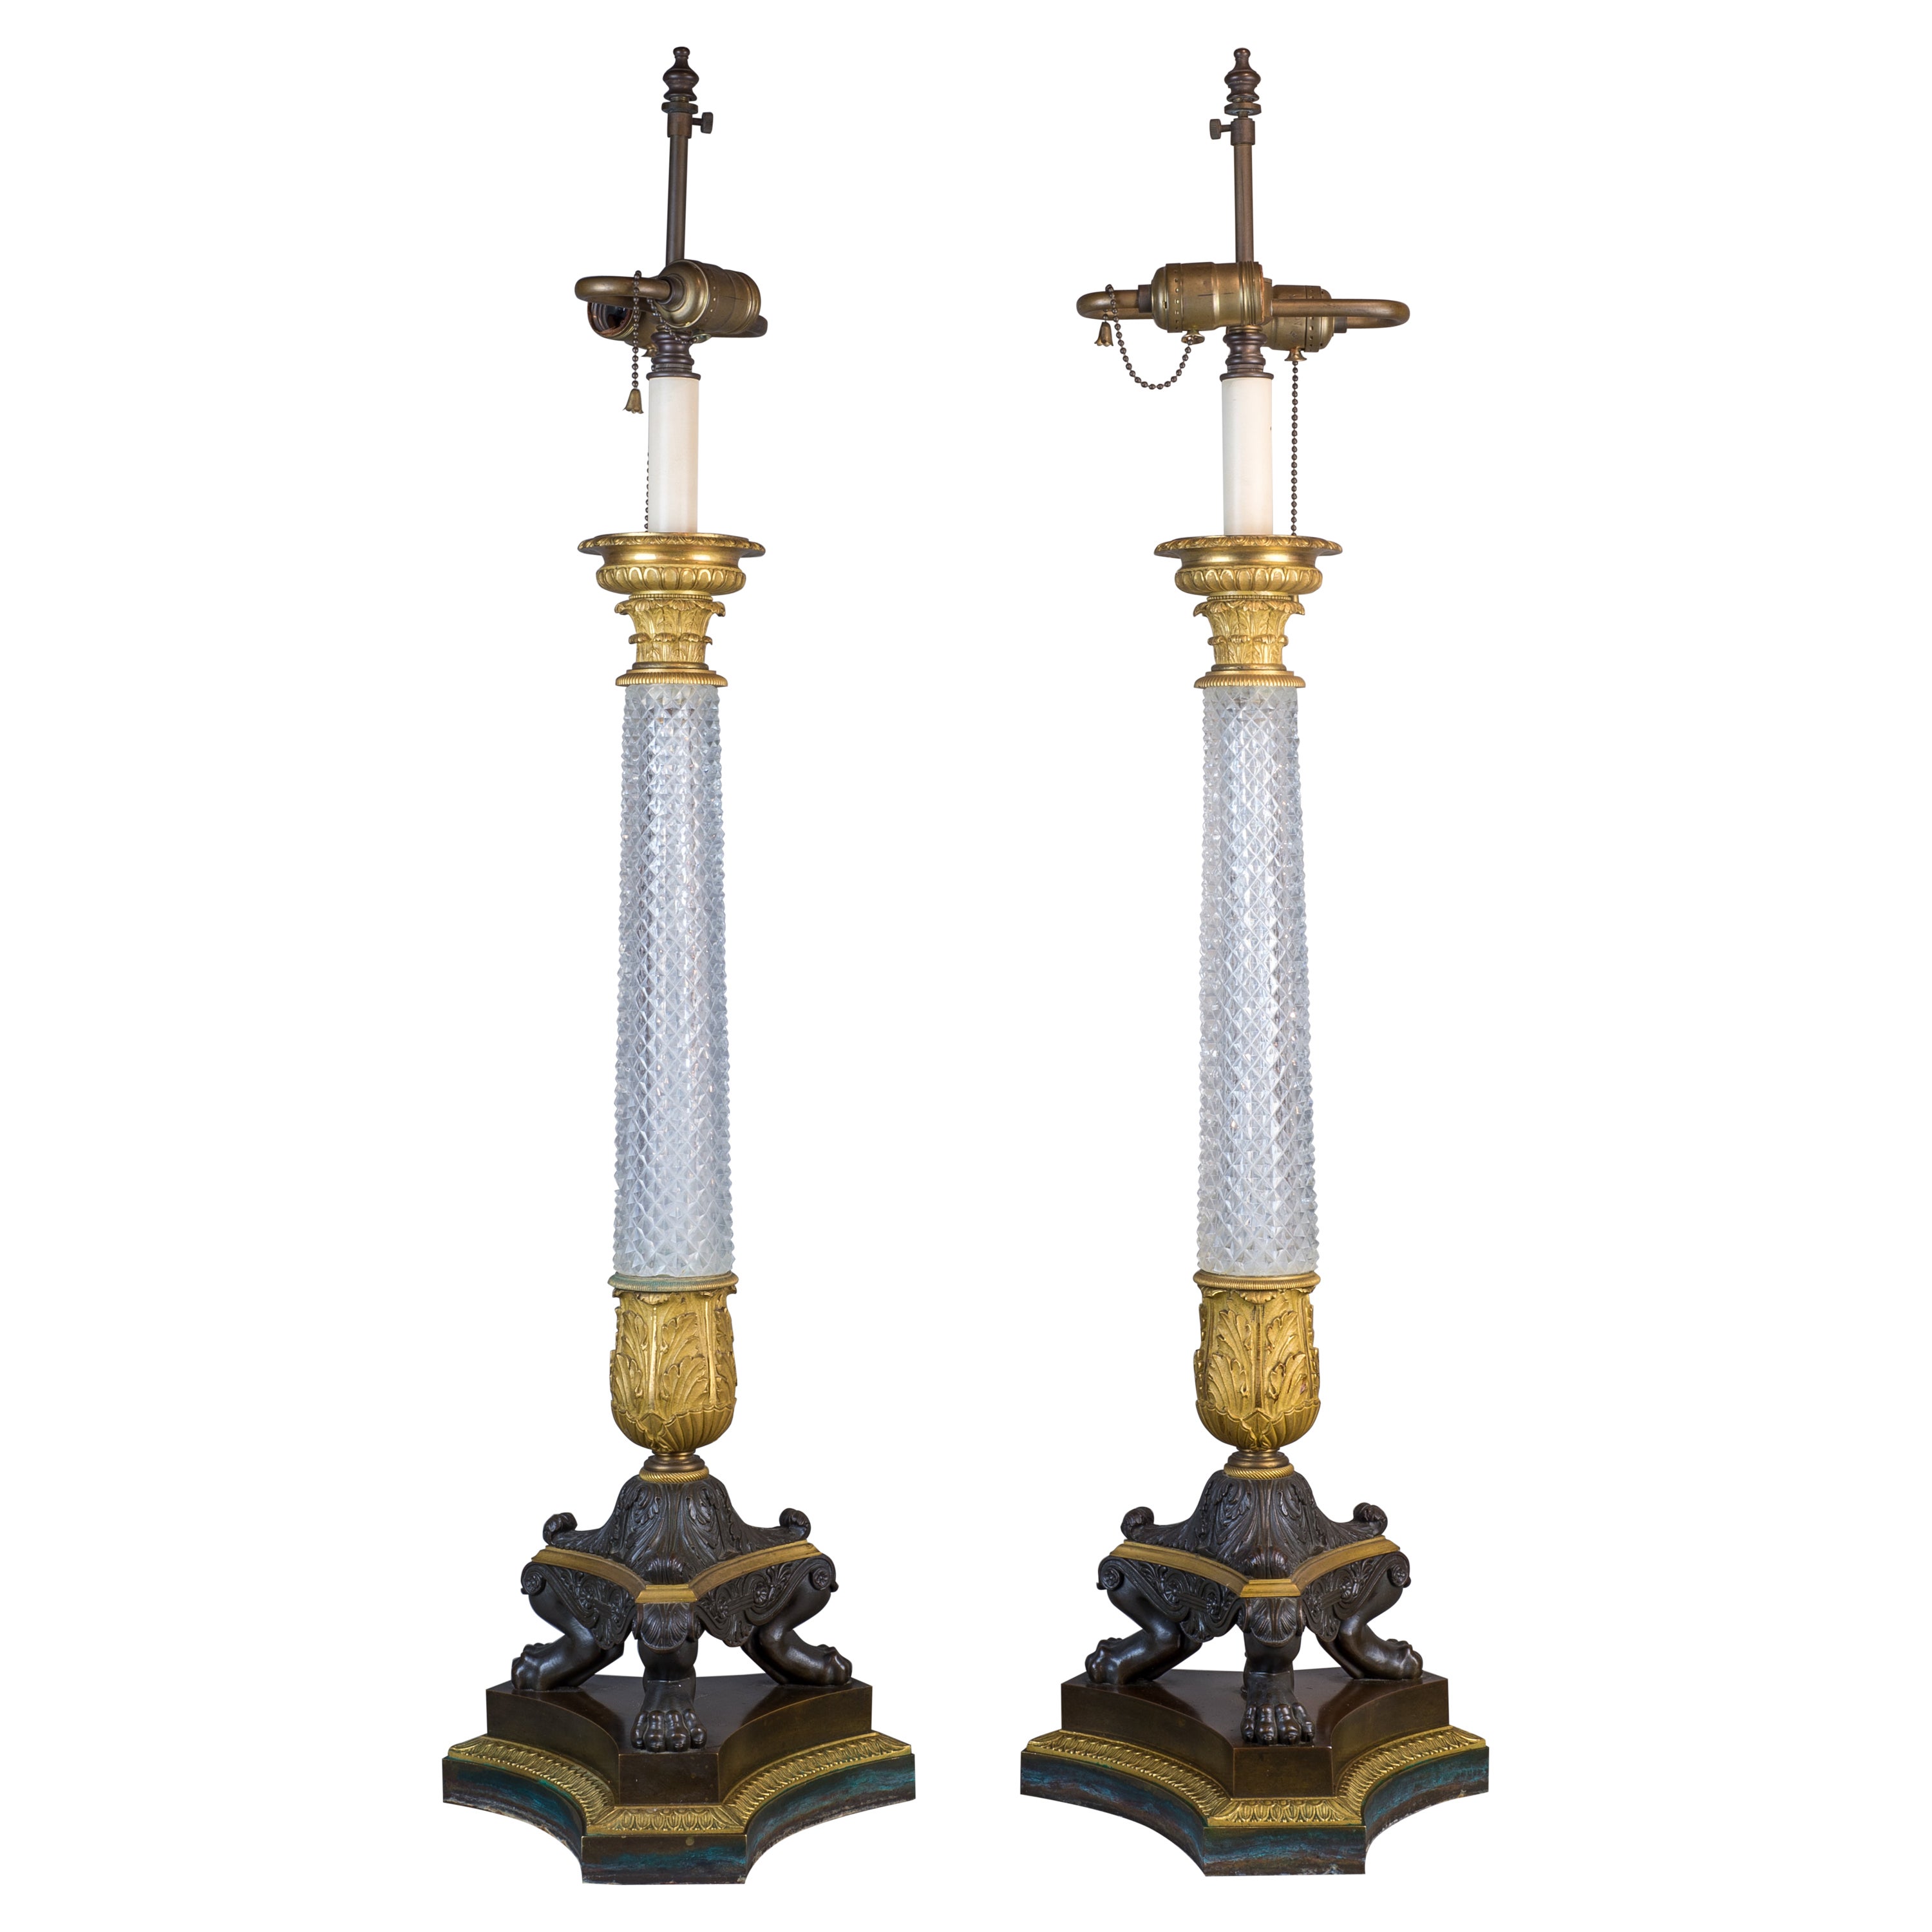 Pareja de lámparas de cristal tallado con montura de ormolu de la época Imperio